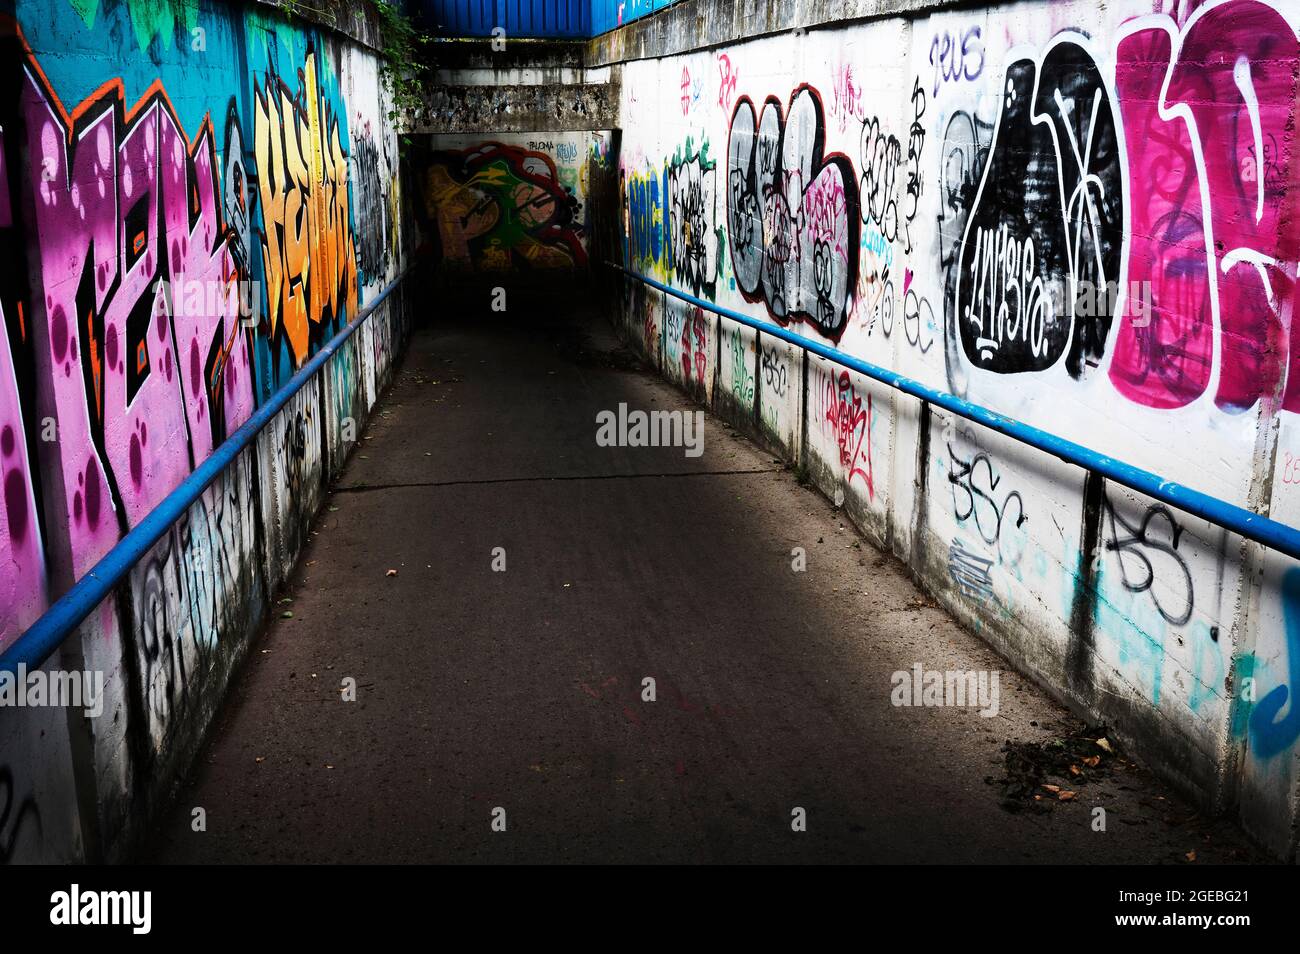 Heavily graffitied subway, Zagreb, Croatia Stock Photo